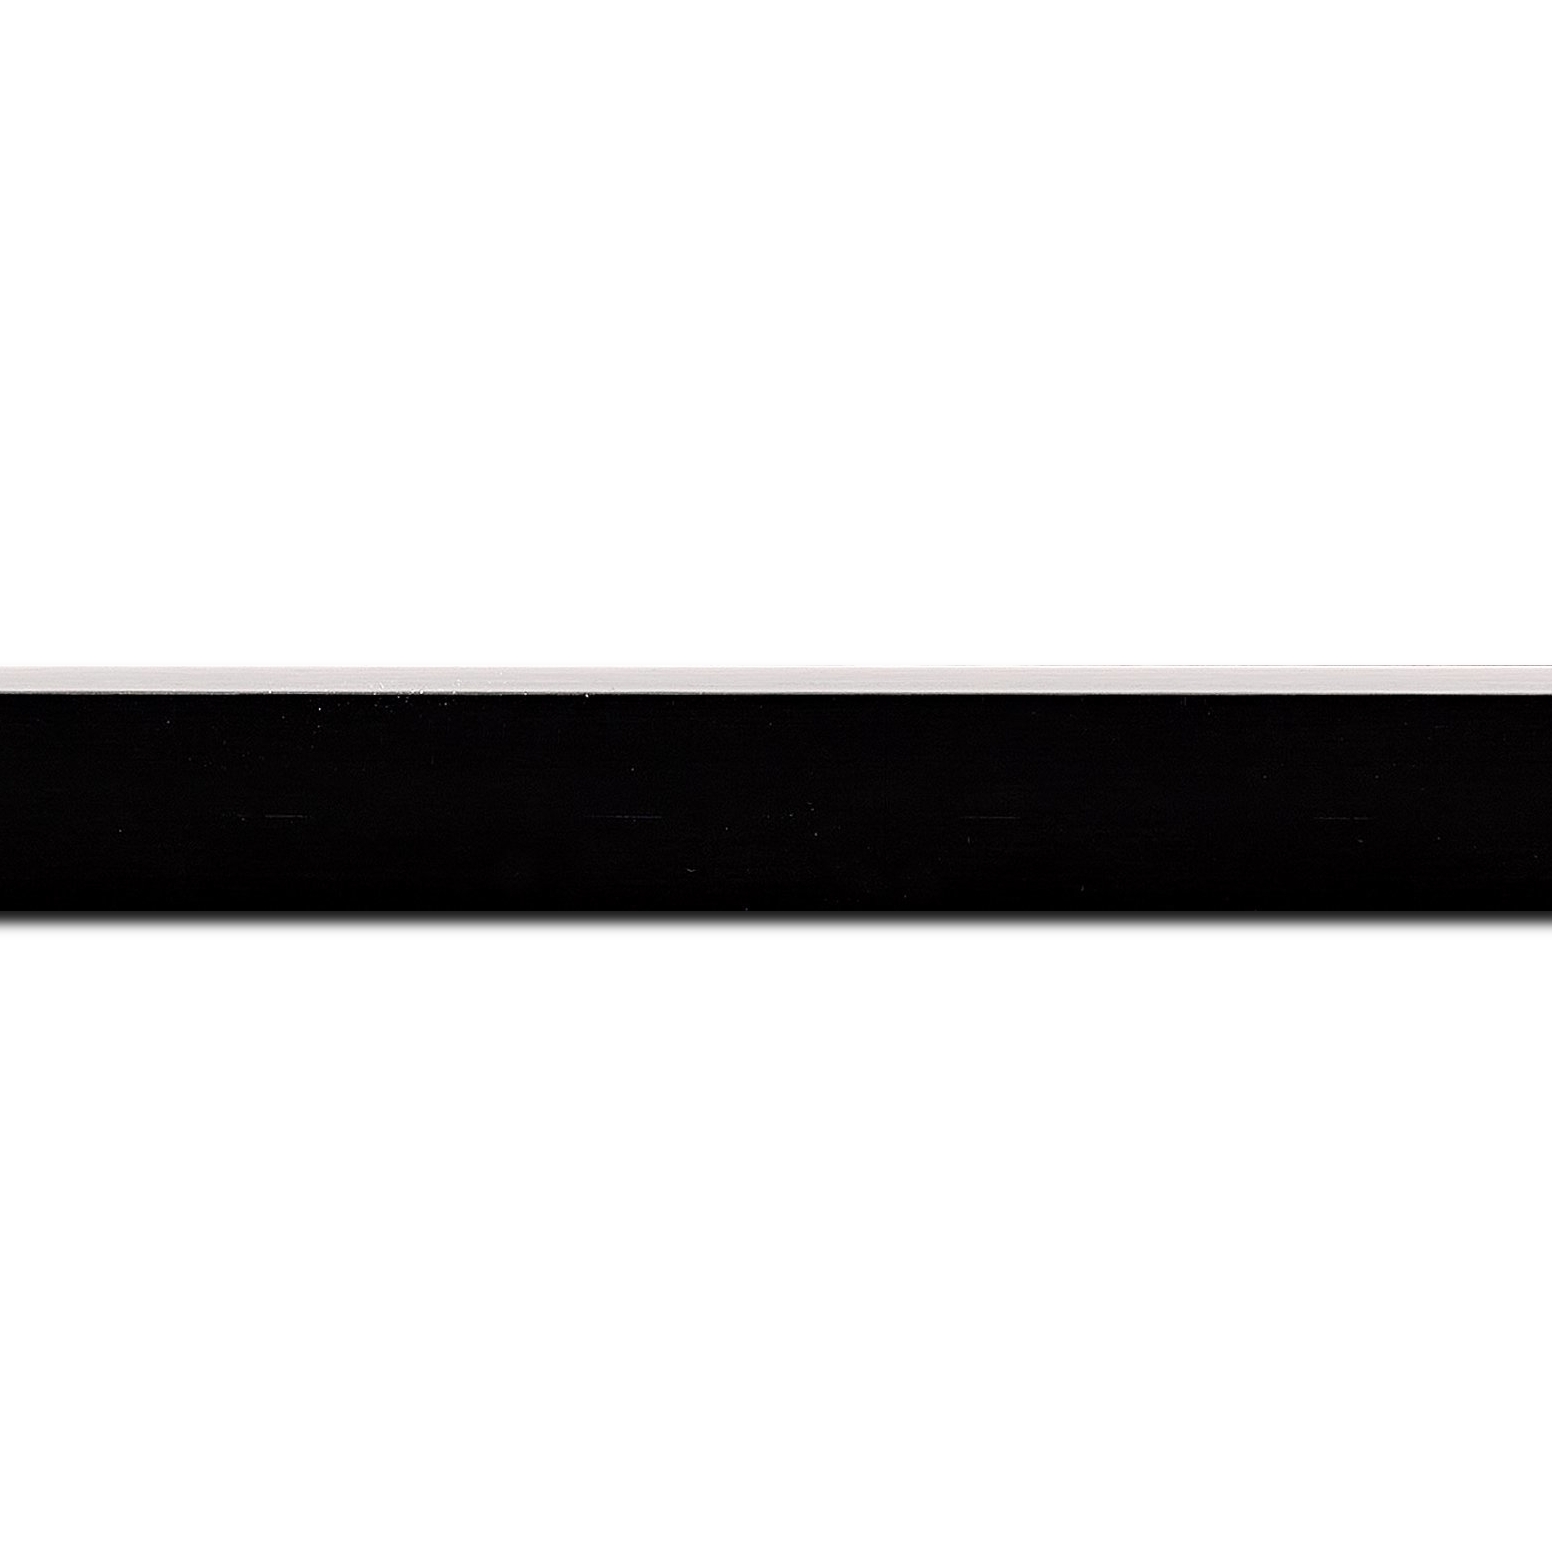 Baguette longueur 1.40m bois profil arrondi en pente plongeant largeur 2.4cm couleur noir satiné,veine du bois  apparent (pin) , angle du cadre extérieur filet argent chromé